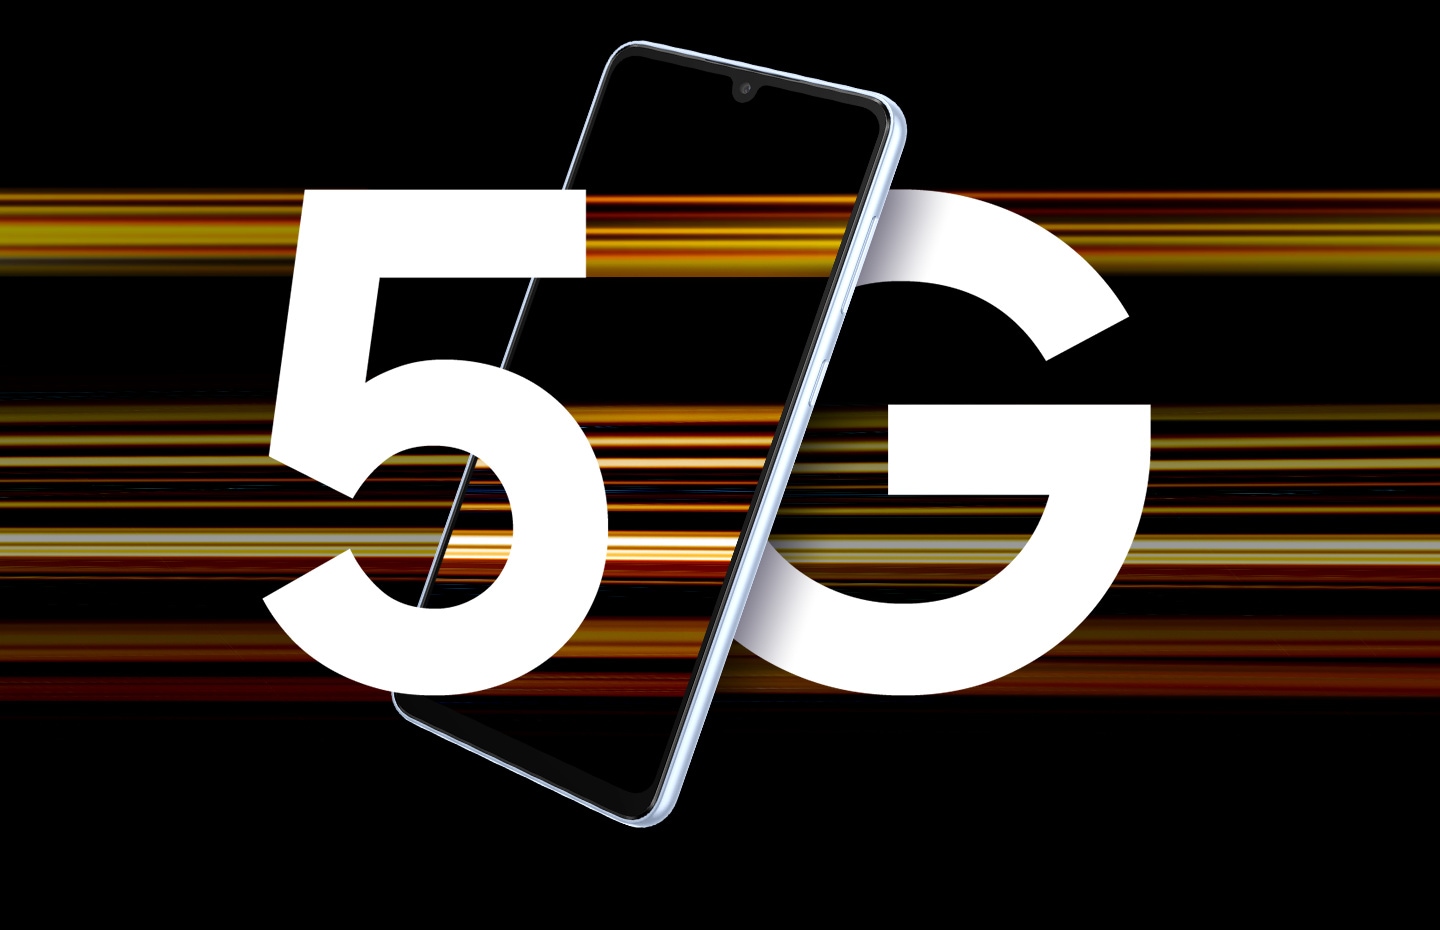 L’immagine mostra un Galaxy A33 5G con il testo 5G, le cui lettere sono divise dal dispositivo e circondato da fasci di luce colorata che rappresentano la velocità del 5G.